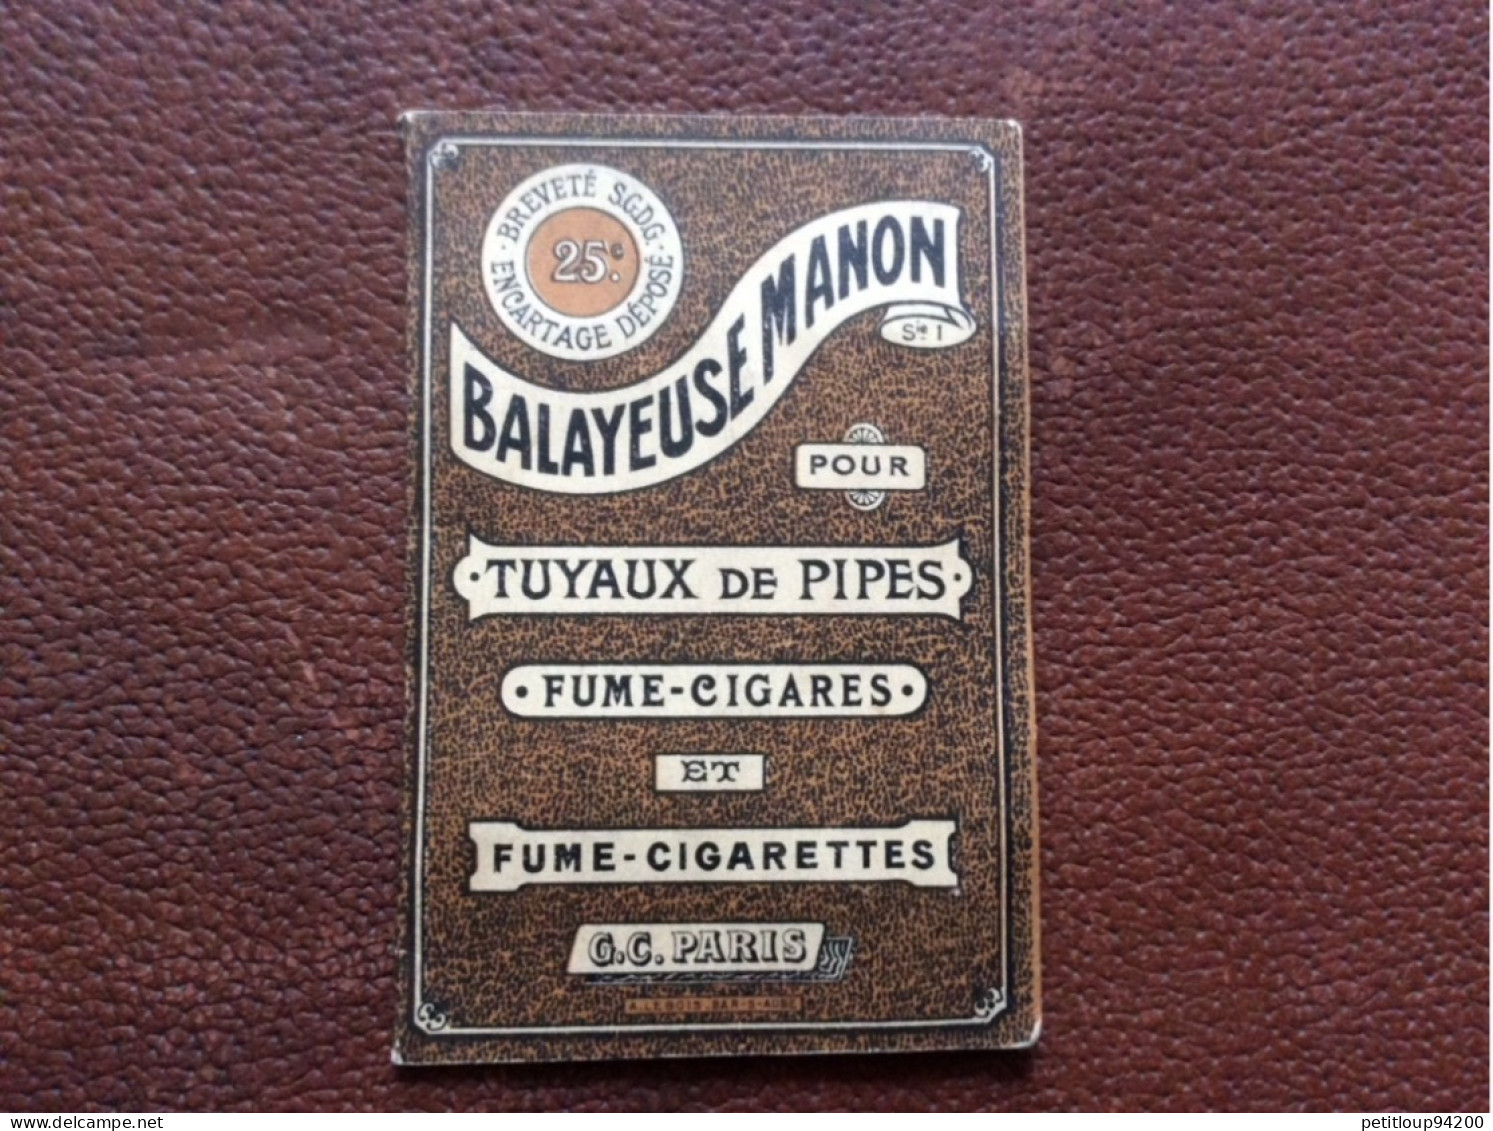 BALAYEUSE MANON  Tuyaux De Pipes  Fume-Cigares  Fume-Cigarettes  G.C  Paris  A.LEBOIS  Bar-s-Aube - Unclassified